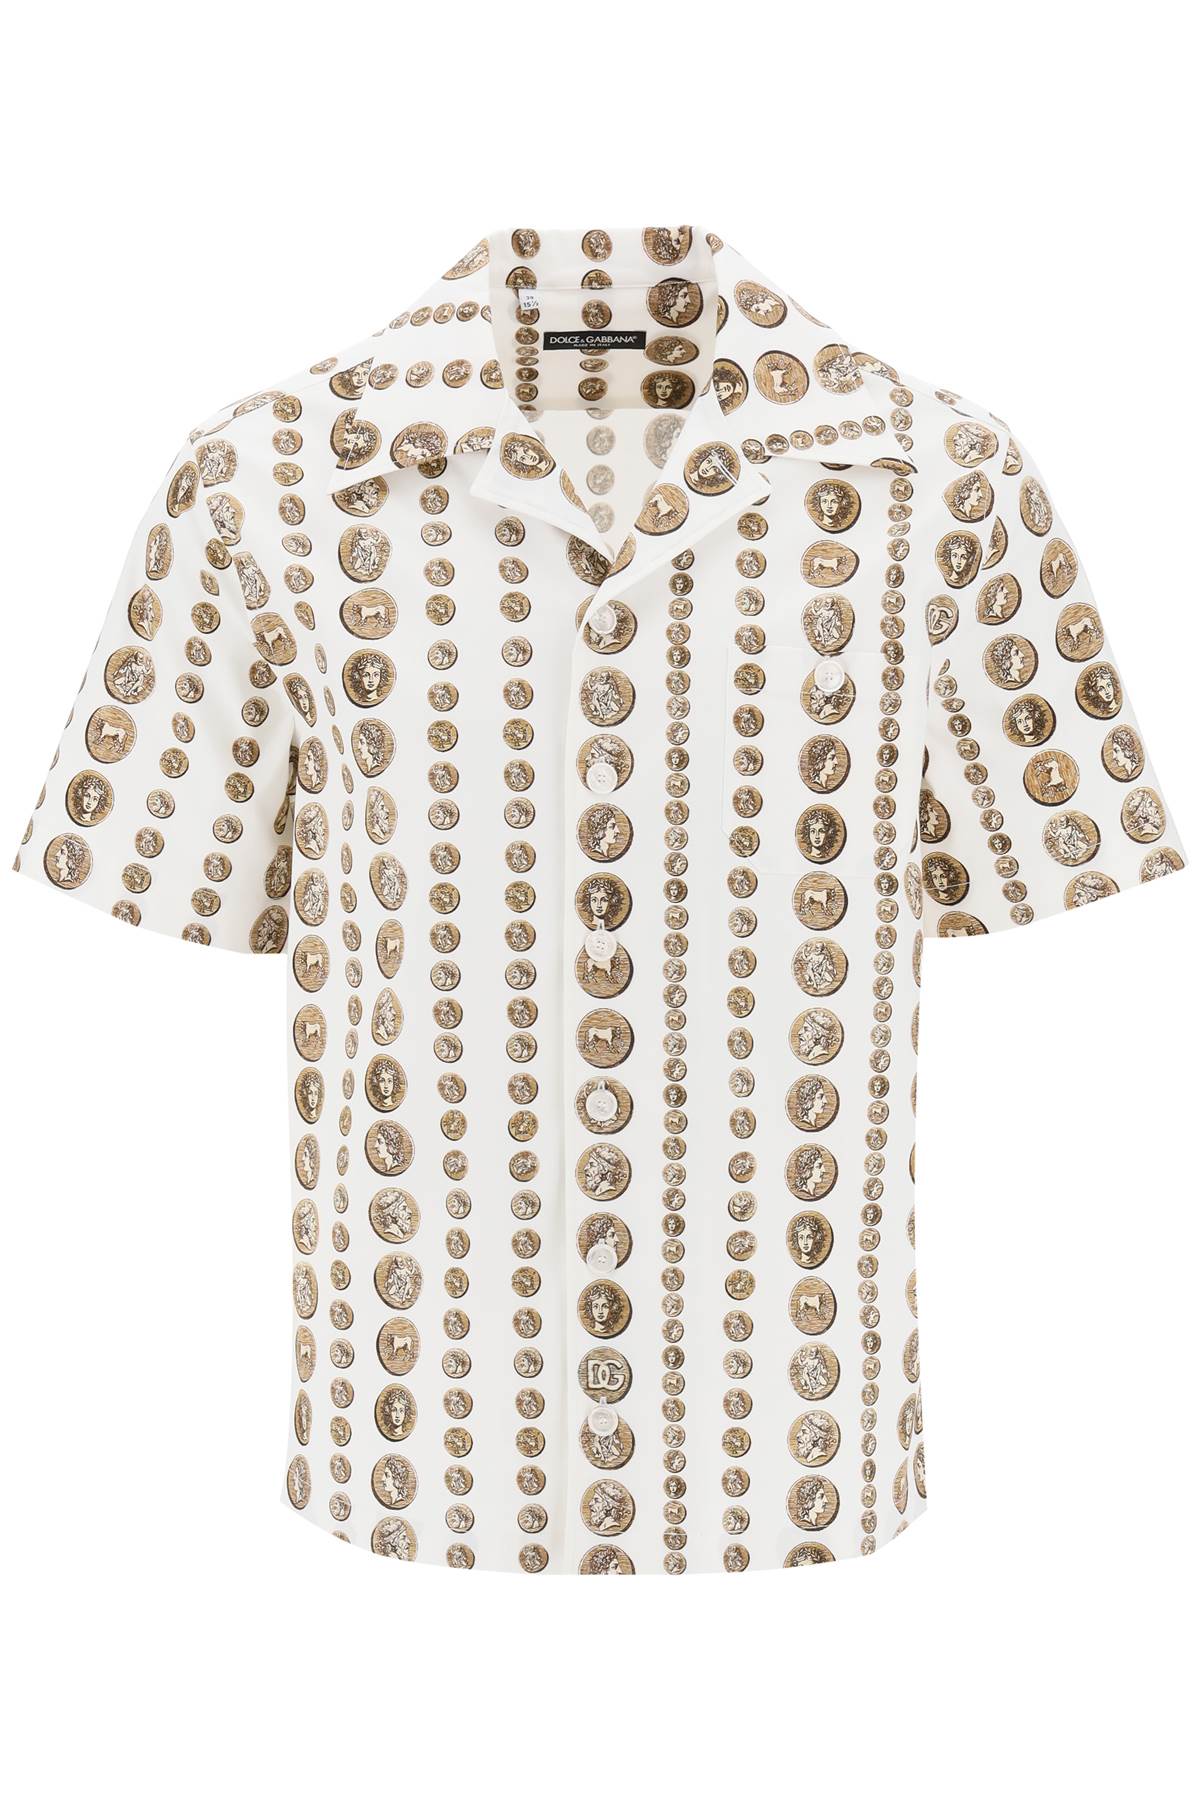 Dolce & Gabbana Coin Print Short Sleeve Shirt